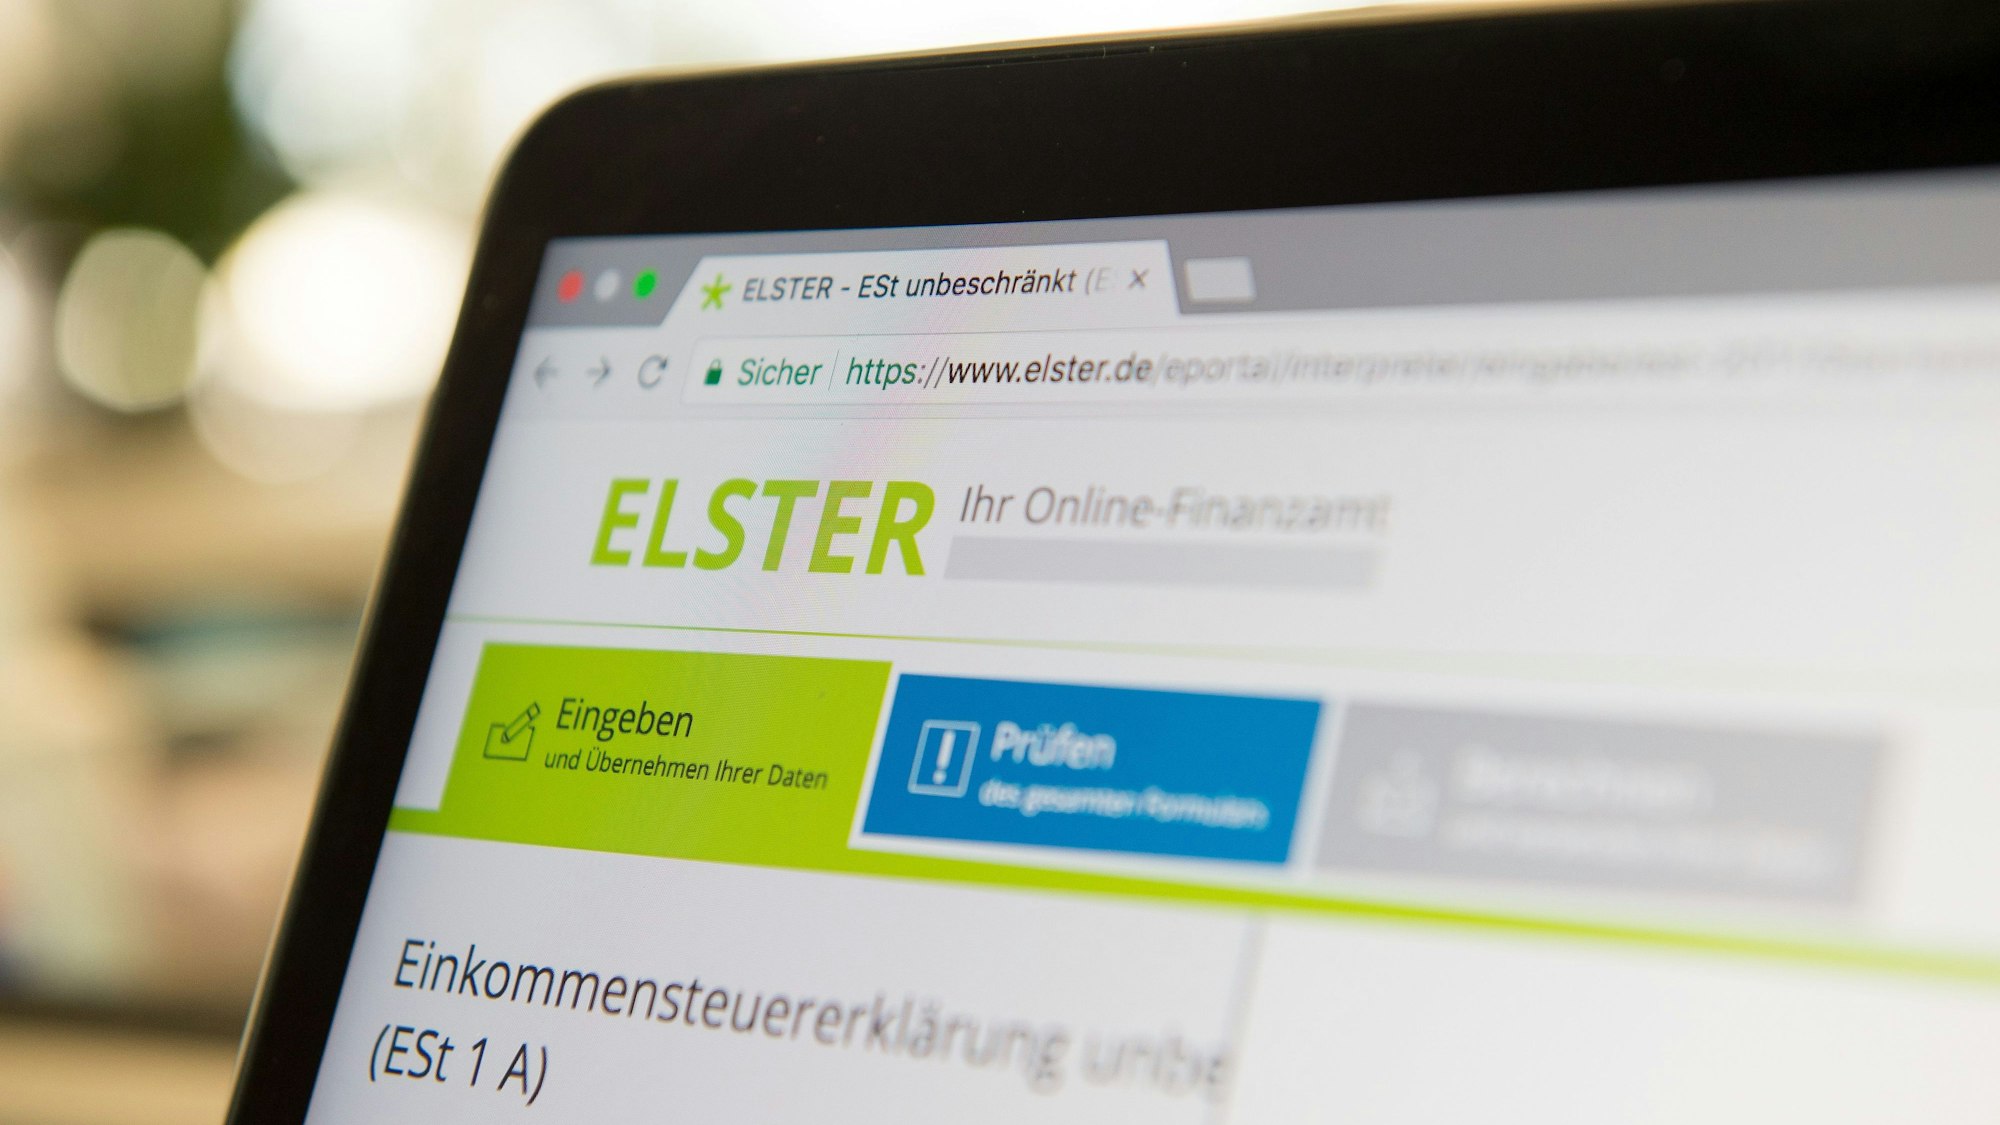 Die Steuer-Plattform „Elster“ ist auf dem Bildschirm eines Laptops zu sehen.